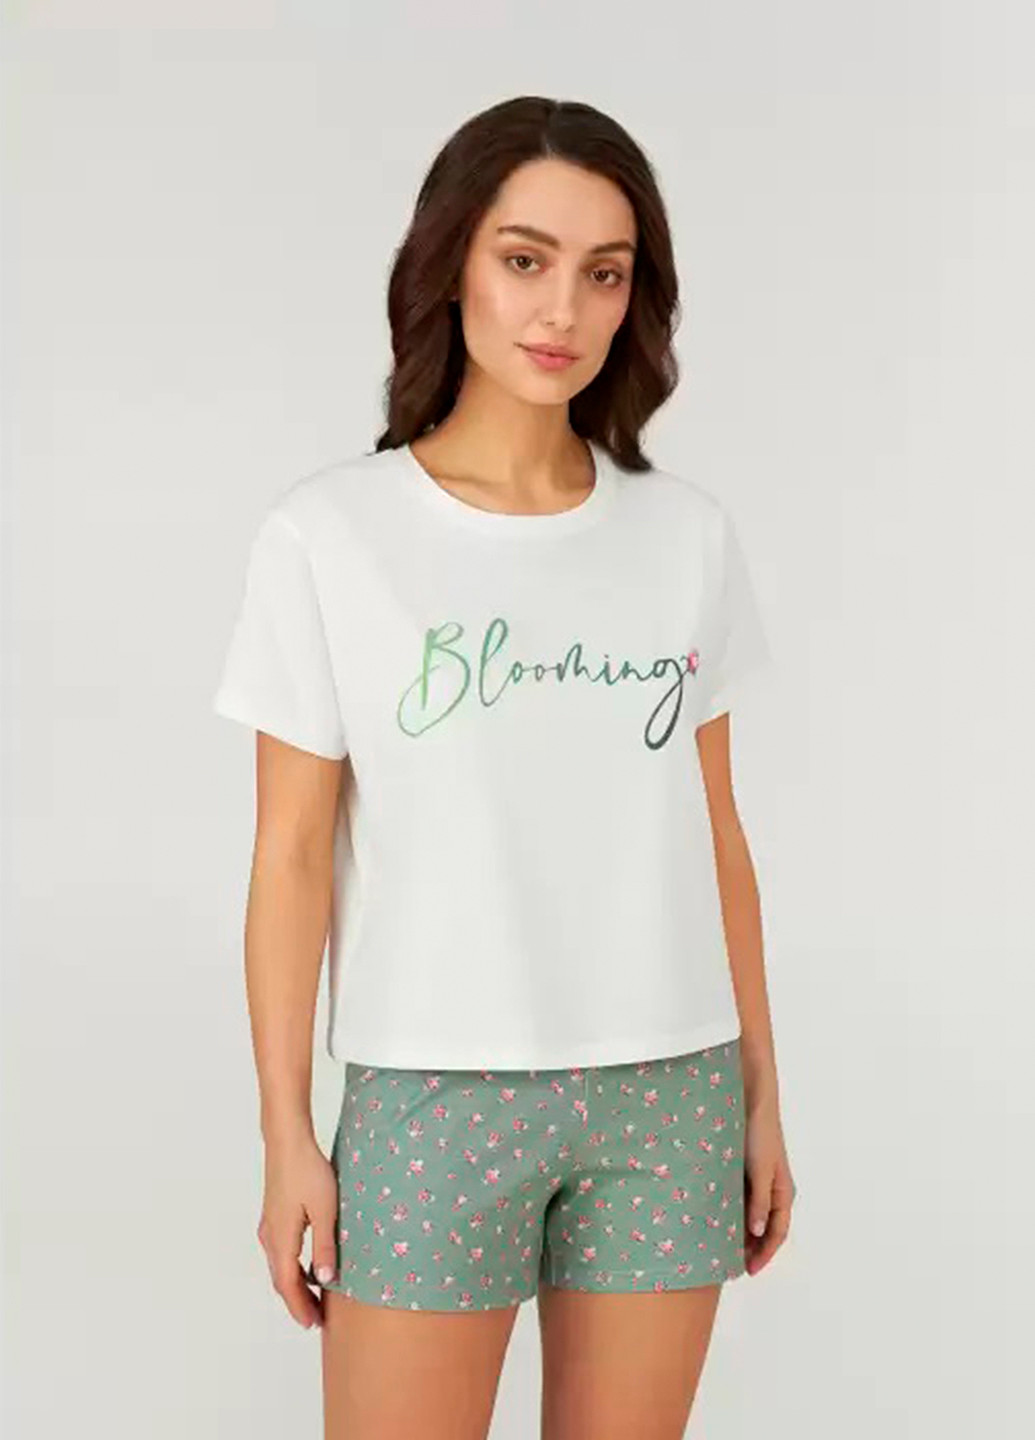 Комбинированная всесезон пижама (футболка, шорты) футболка + шорты Ellen